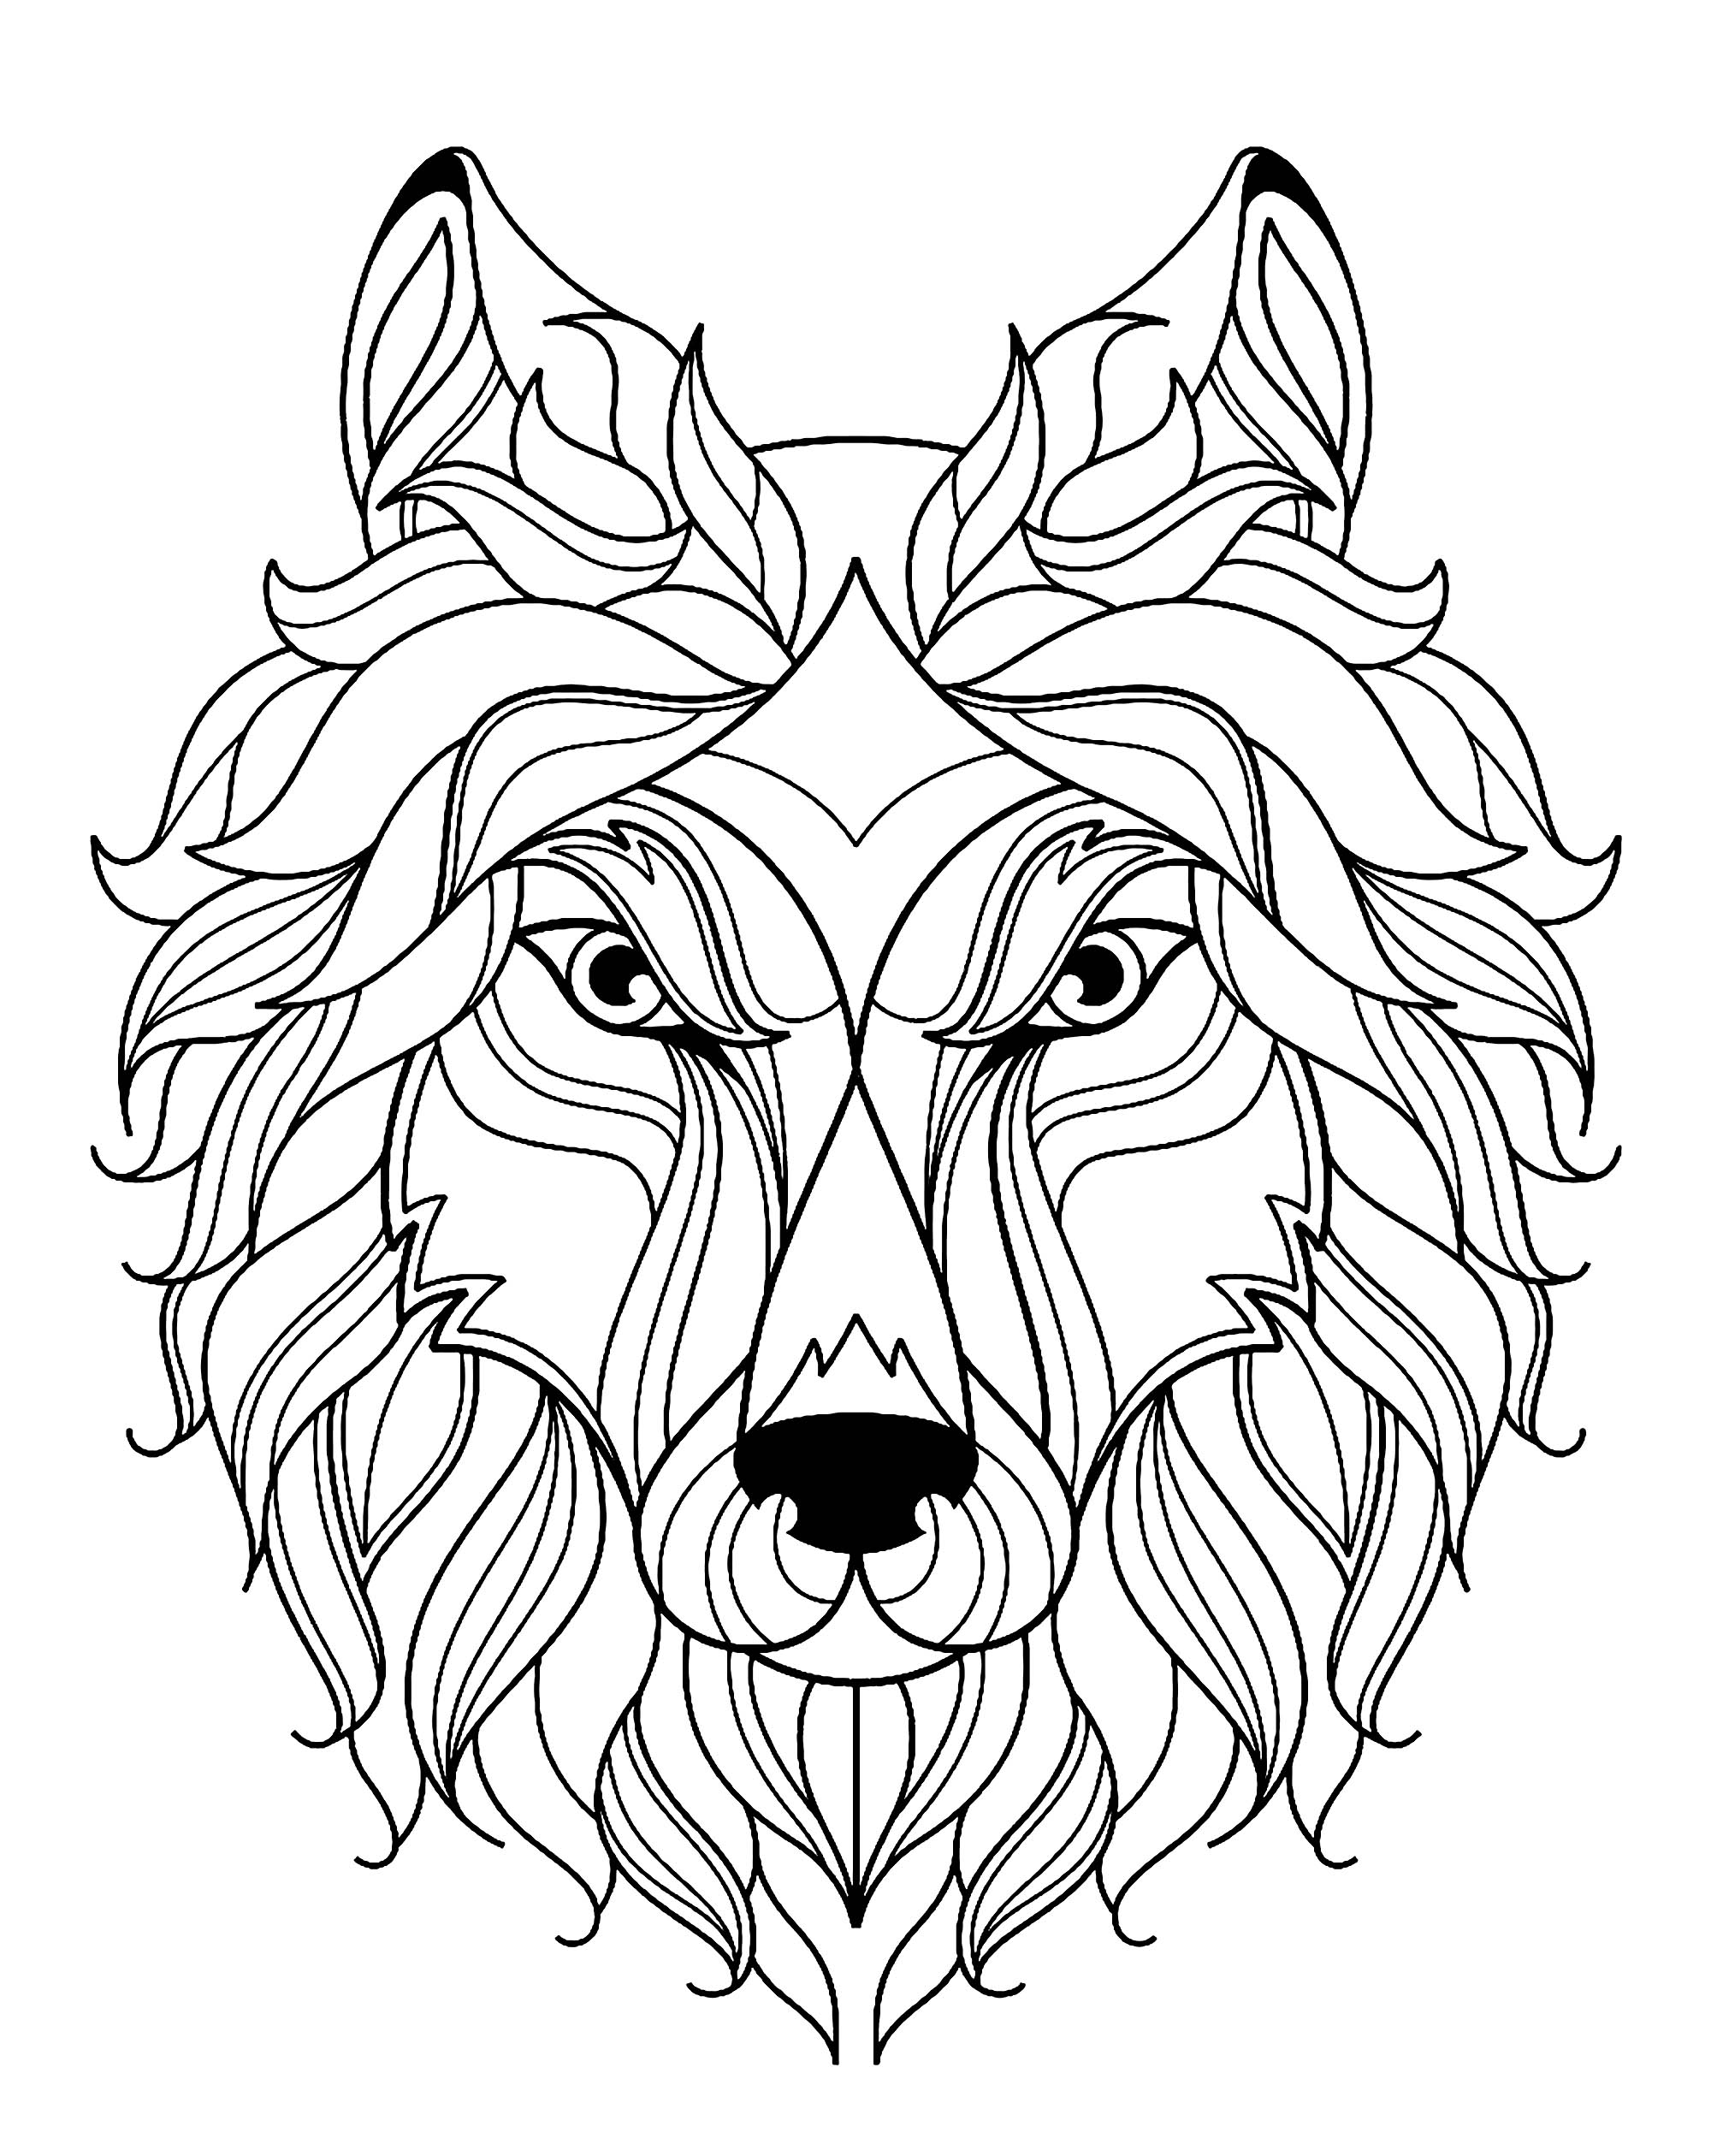 Dibujos para colorear gratis de Lobo para descargar, Artista : Алла-Глущенко   Origen : 123rf